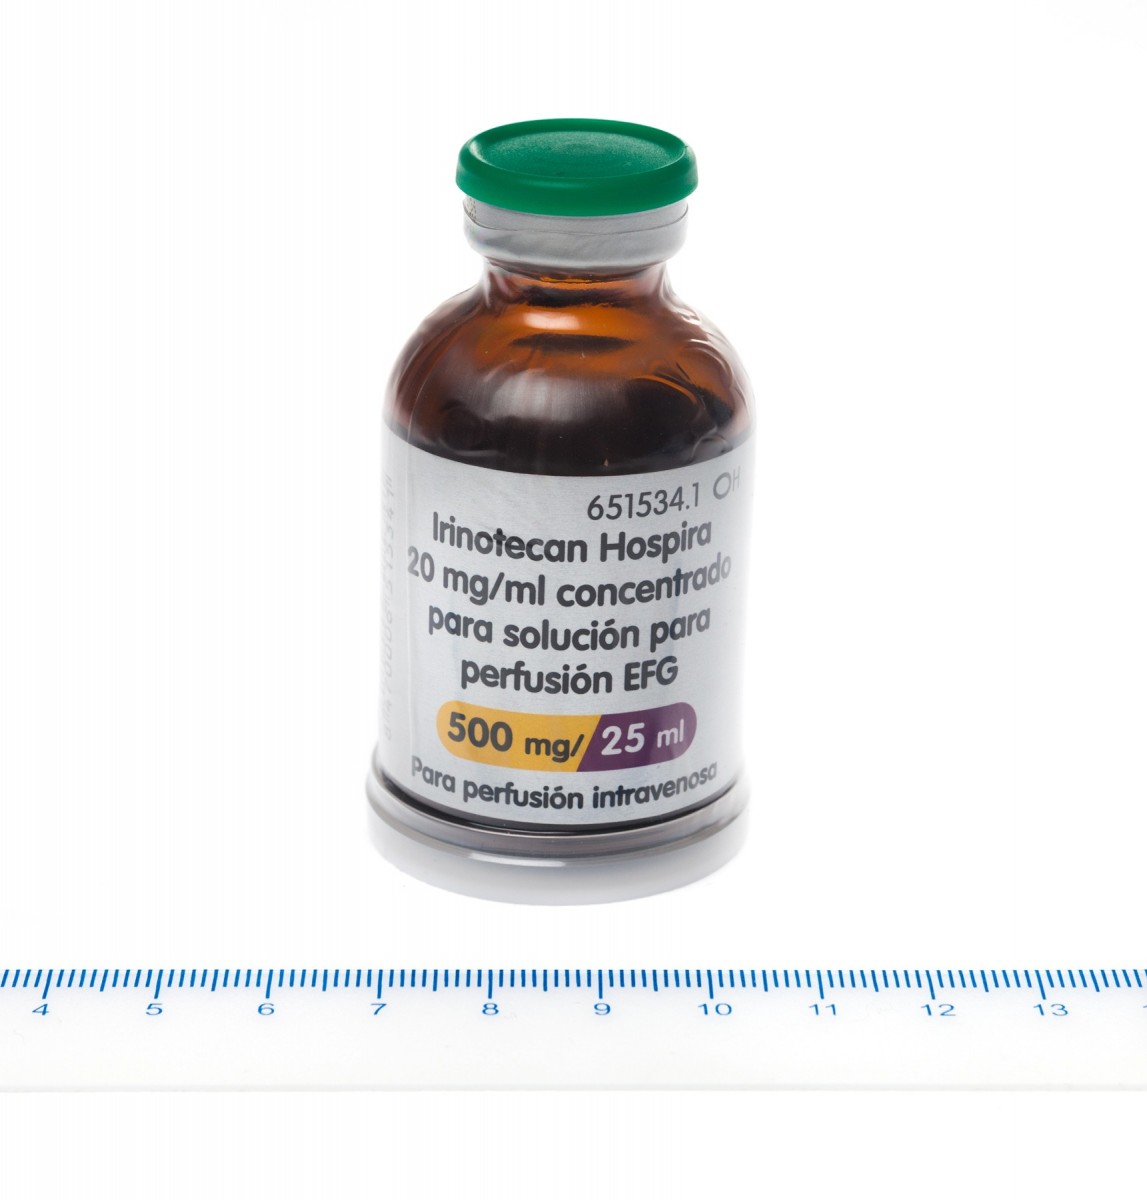 IRINOTECAN HOSPIRA 20 mg/ml CONCENTRADO PARA SOLUCION PARA  PERFUSION EFG , 1 vial de 2 ml fotografía de la forma farmacéutica.